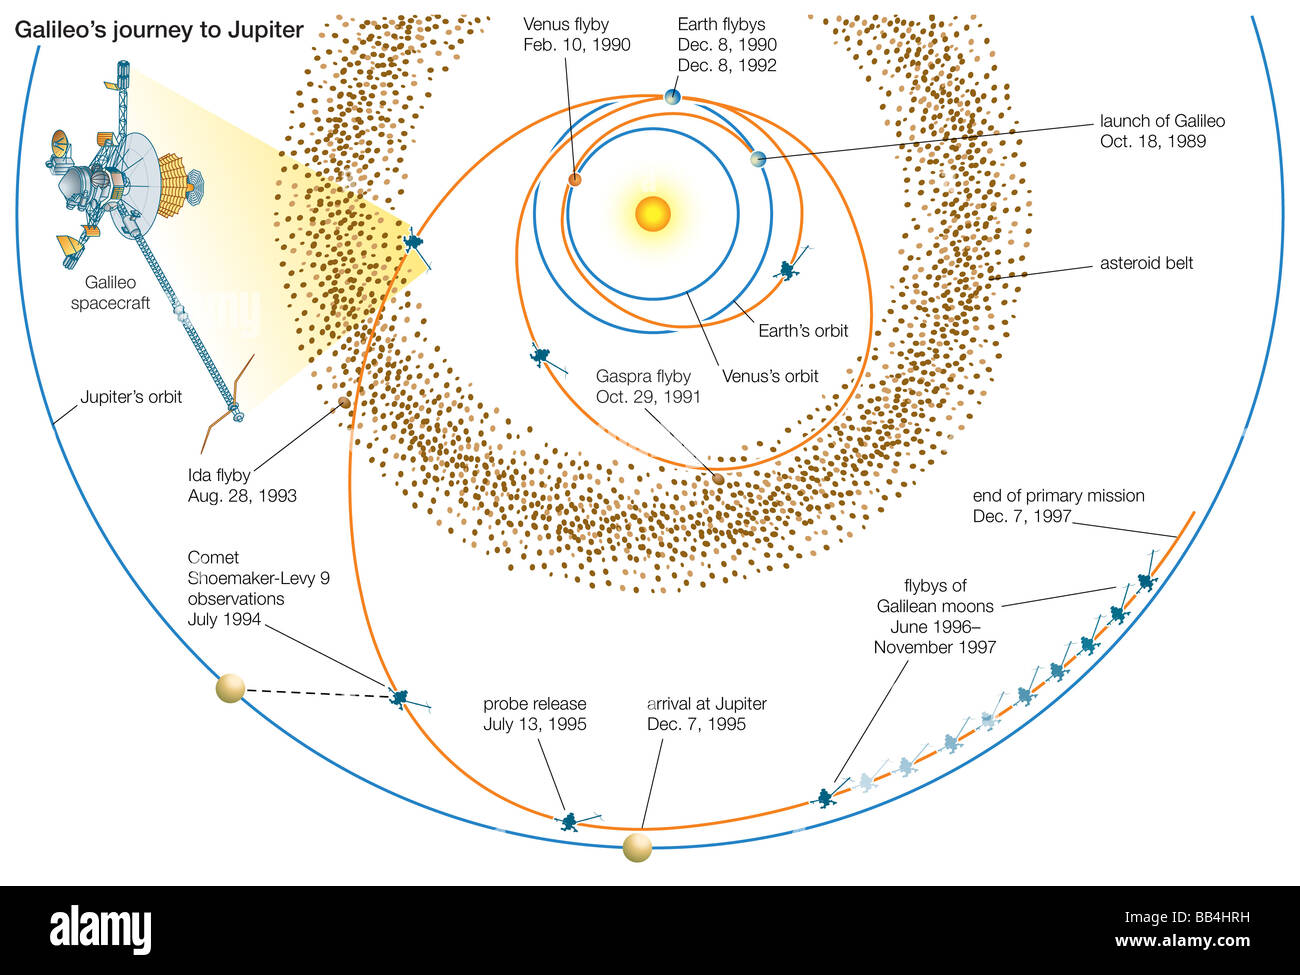 Il viaggio del veicolo spaziale di Galileo a Giove, evidenziando le principali osservazioni lungo la traiettoria, come pure le loro date. Foto Stock